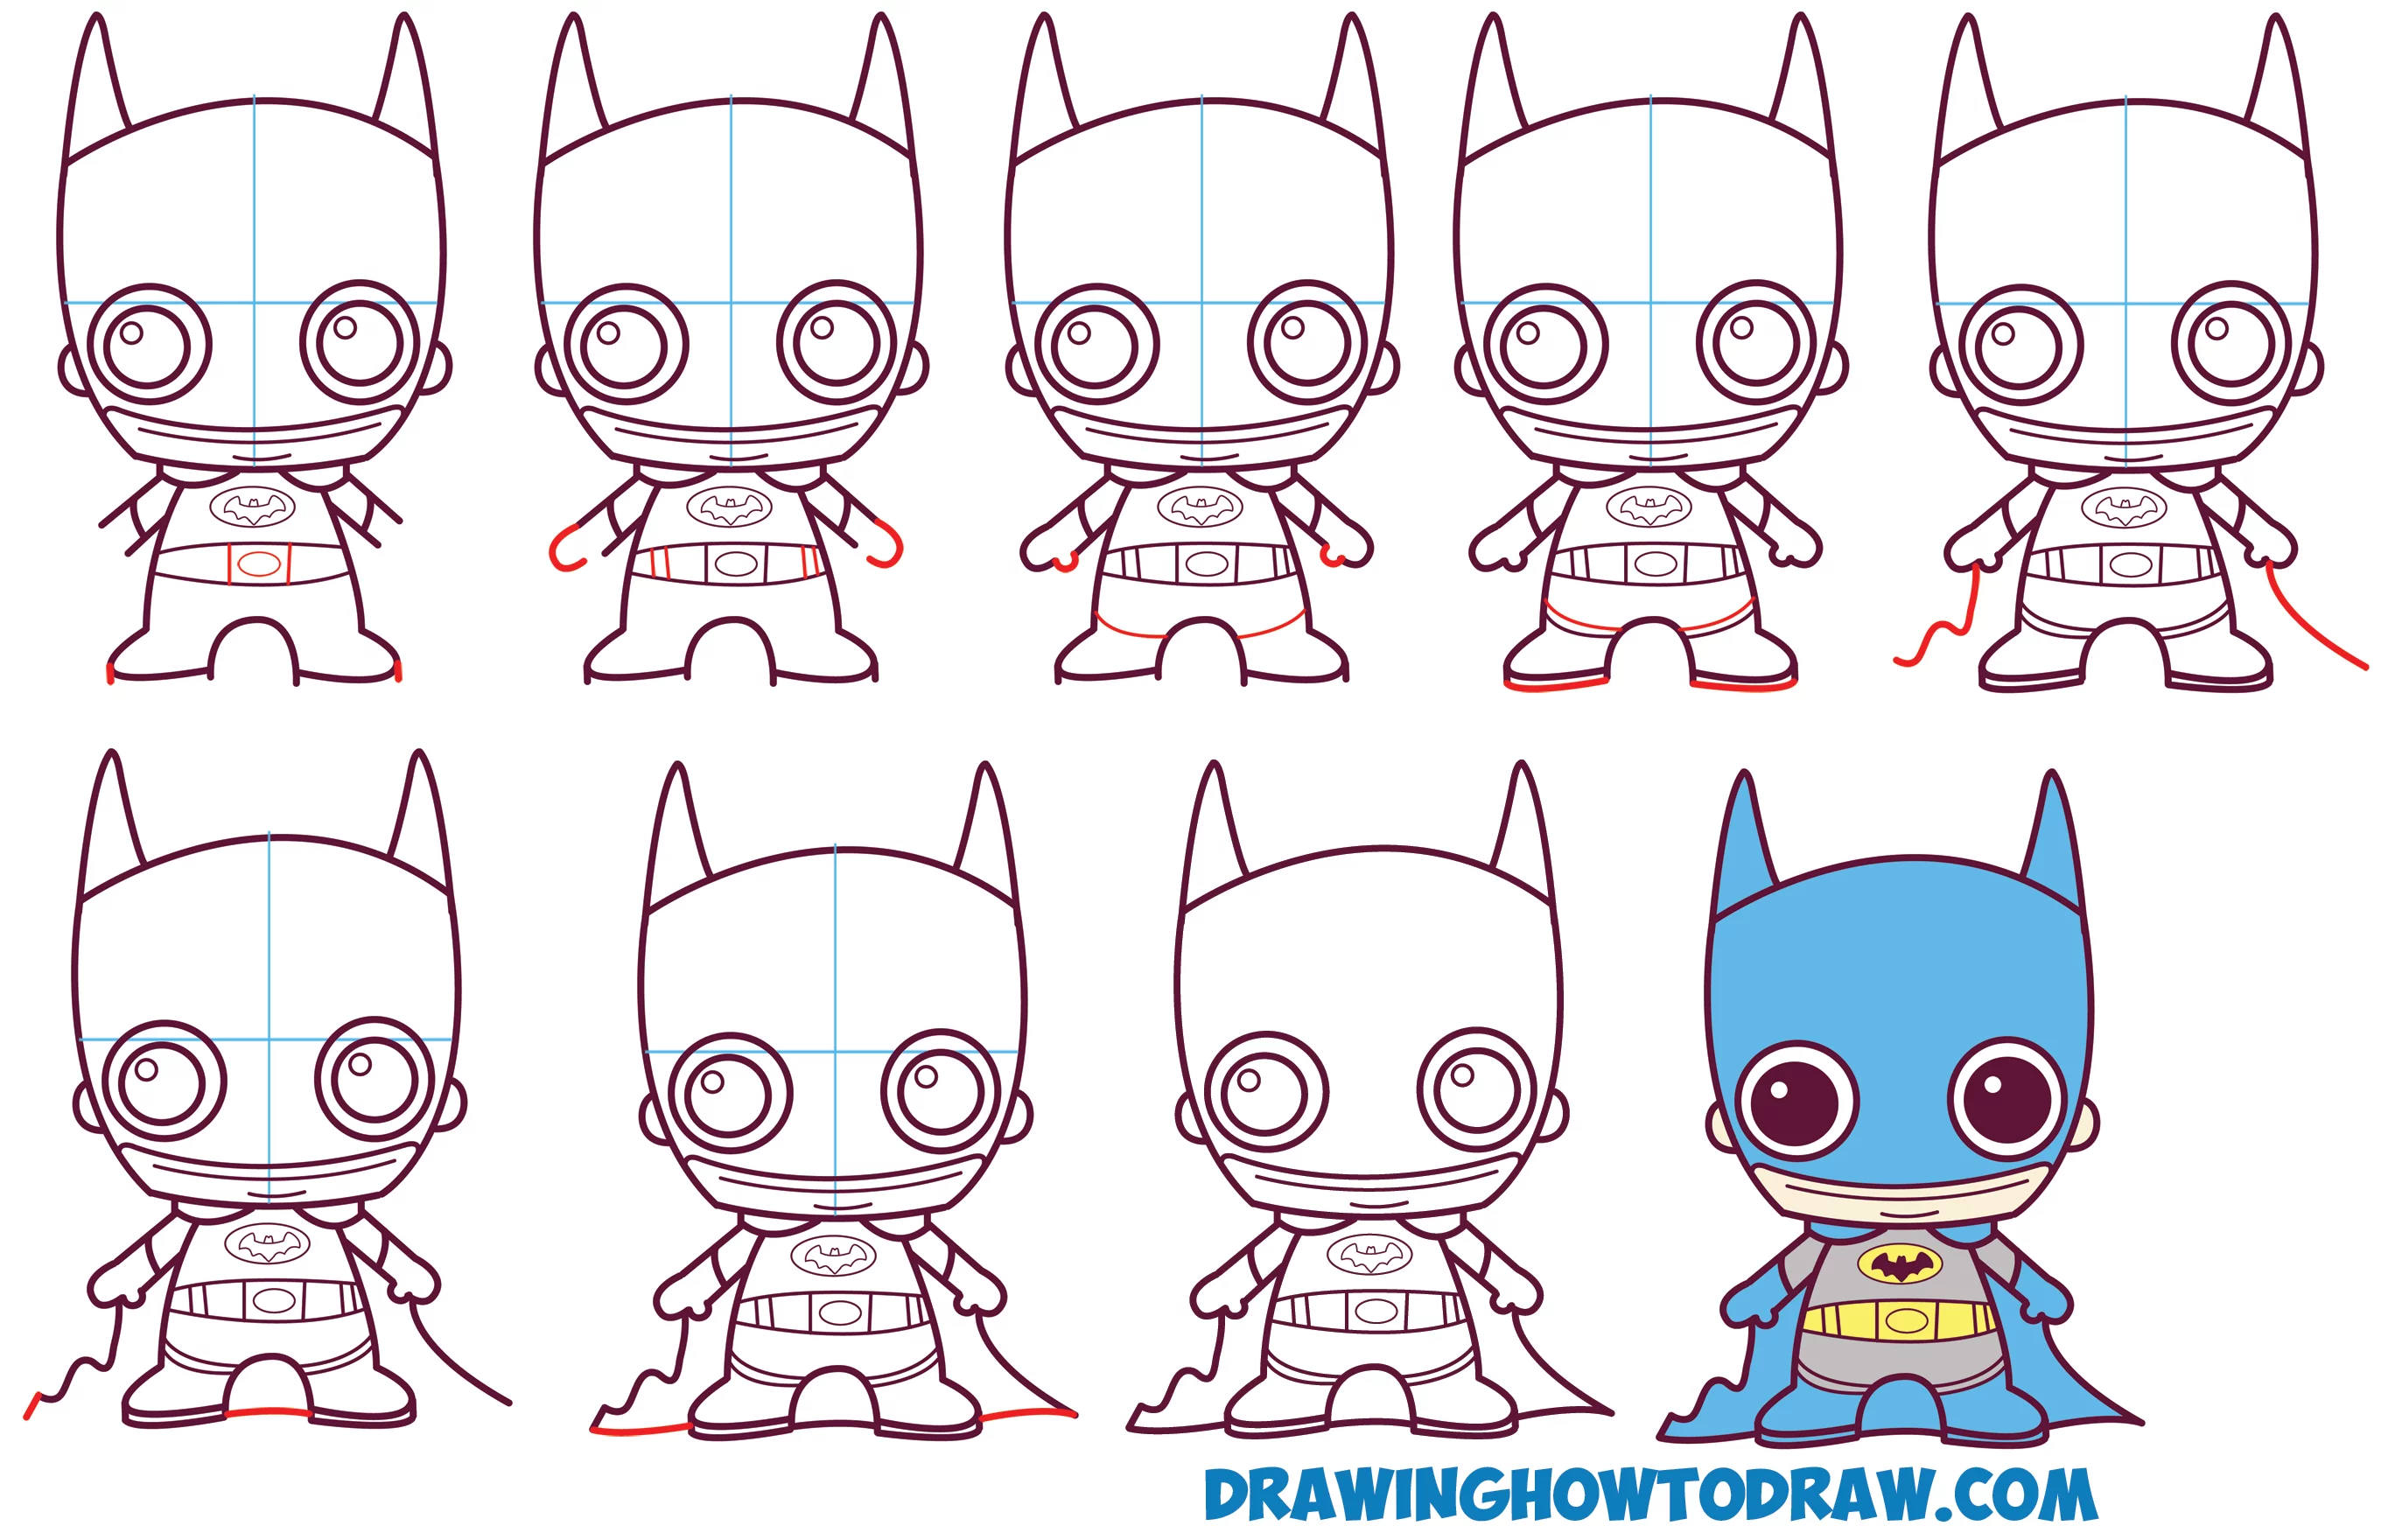 Aprender a Desenhar Bonito / Bebê / Kawaii / Chibi Batman da DC Comics em Passos Simples Aula de Desenho para Crianças